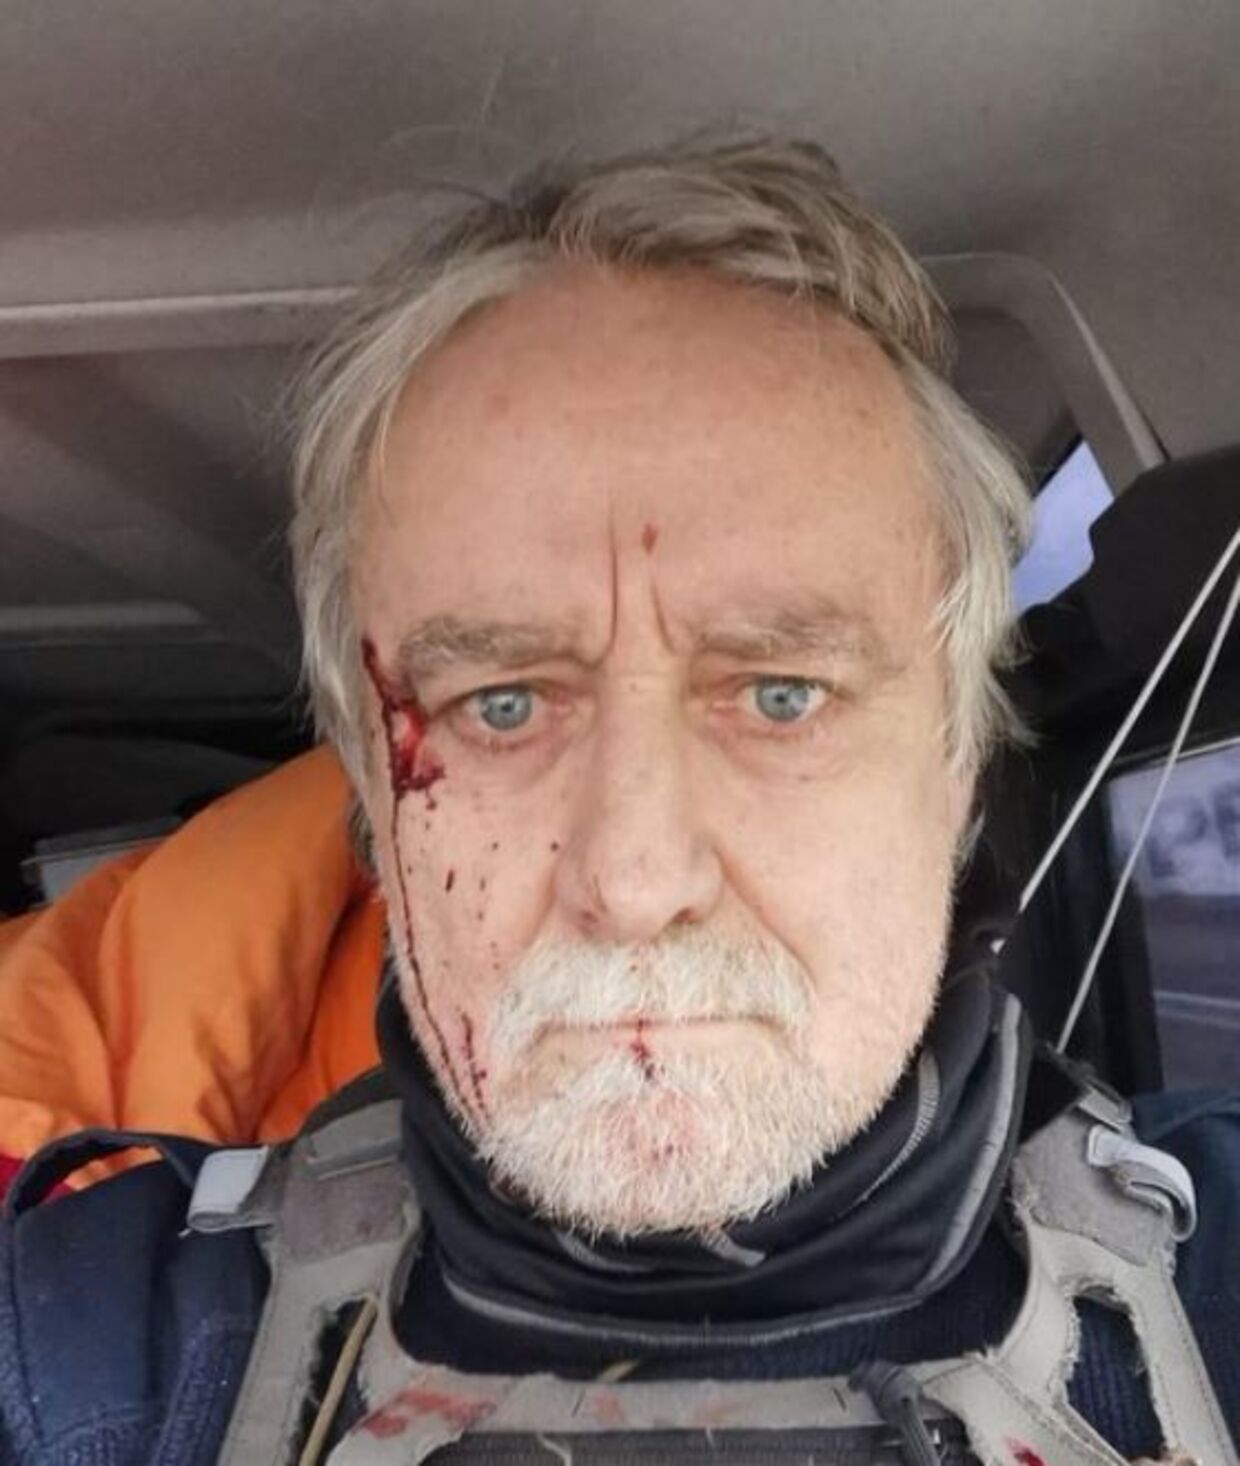 Den schweiziske fotojournalist Guillaume Briquet blev ifølge Journalister uden grænser beskudt af russiske kommandosoldater, mens han udførte sit arbejde i Ukraine.